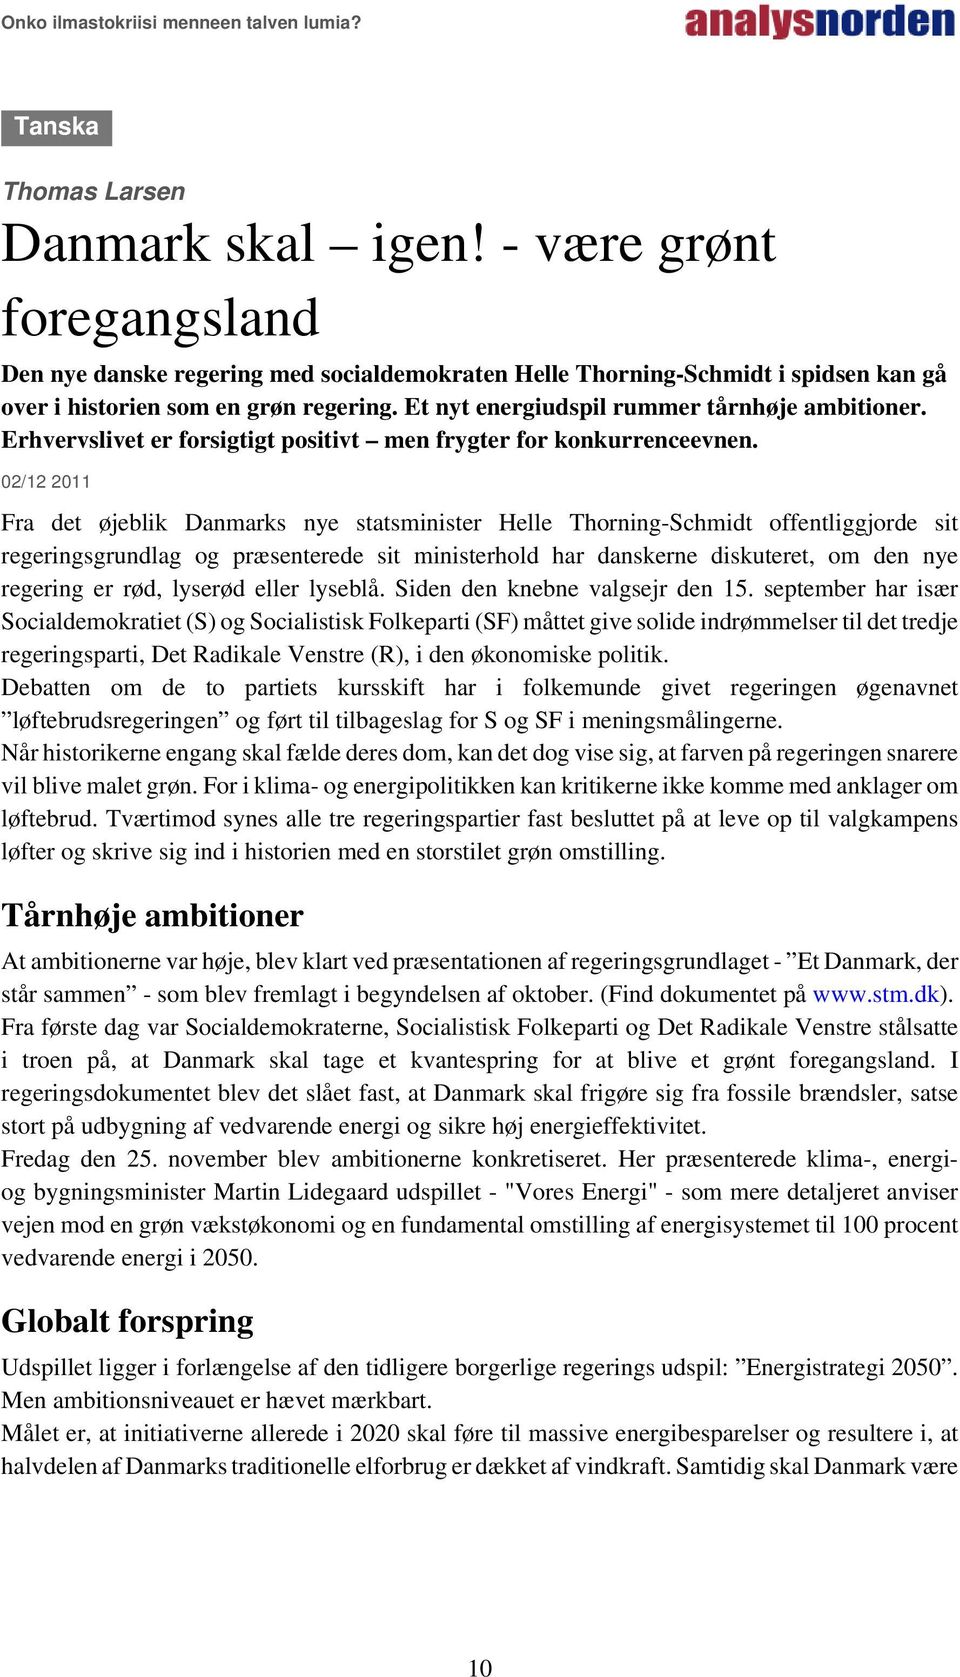 02/12 2011 Fra det øjeblik Danmarks nye statsminister Helle Thorning-Schmidt offentliggjorde sit regeringsgrundlag og præsenterede sit ministerhold har danskerne diskuteret, om den nye regering er